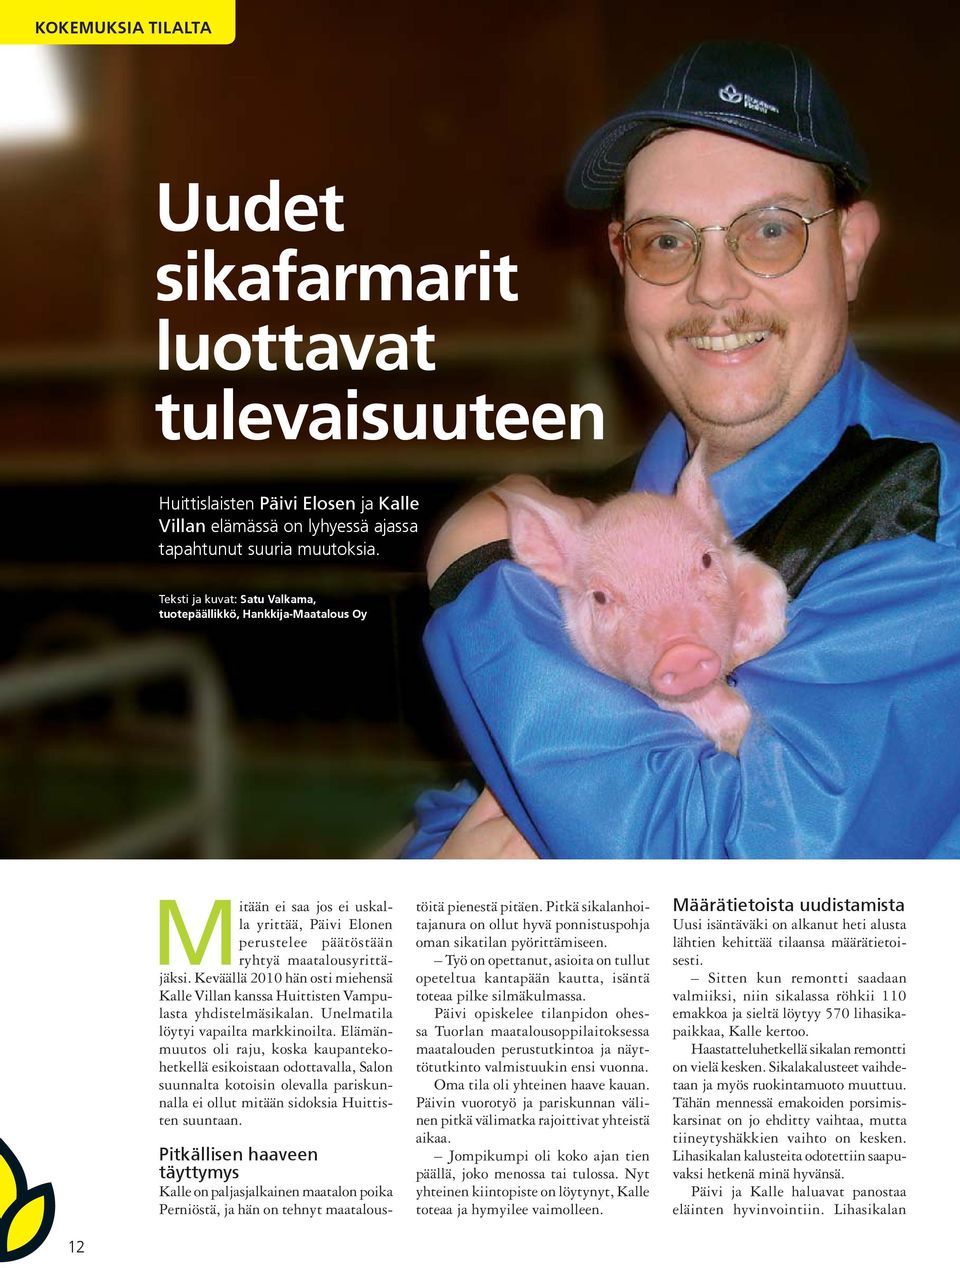 Keväällä 2010 hän osti miehensä Kalle Villan kanssa Huittisten Vampulasta yhdistelmäsikalan. Unelmatila löytyi vapailta markkinoilta.